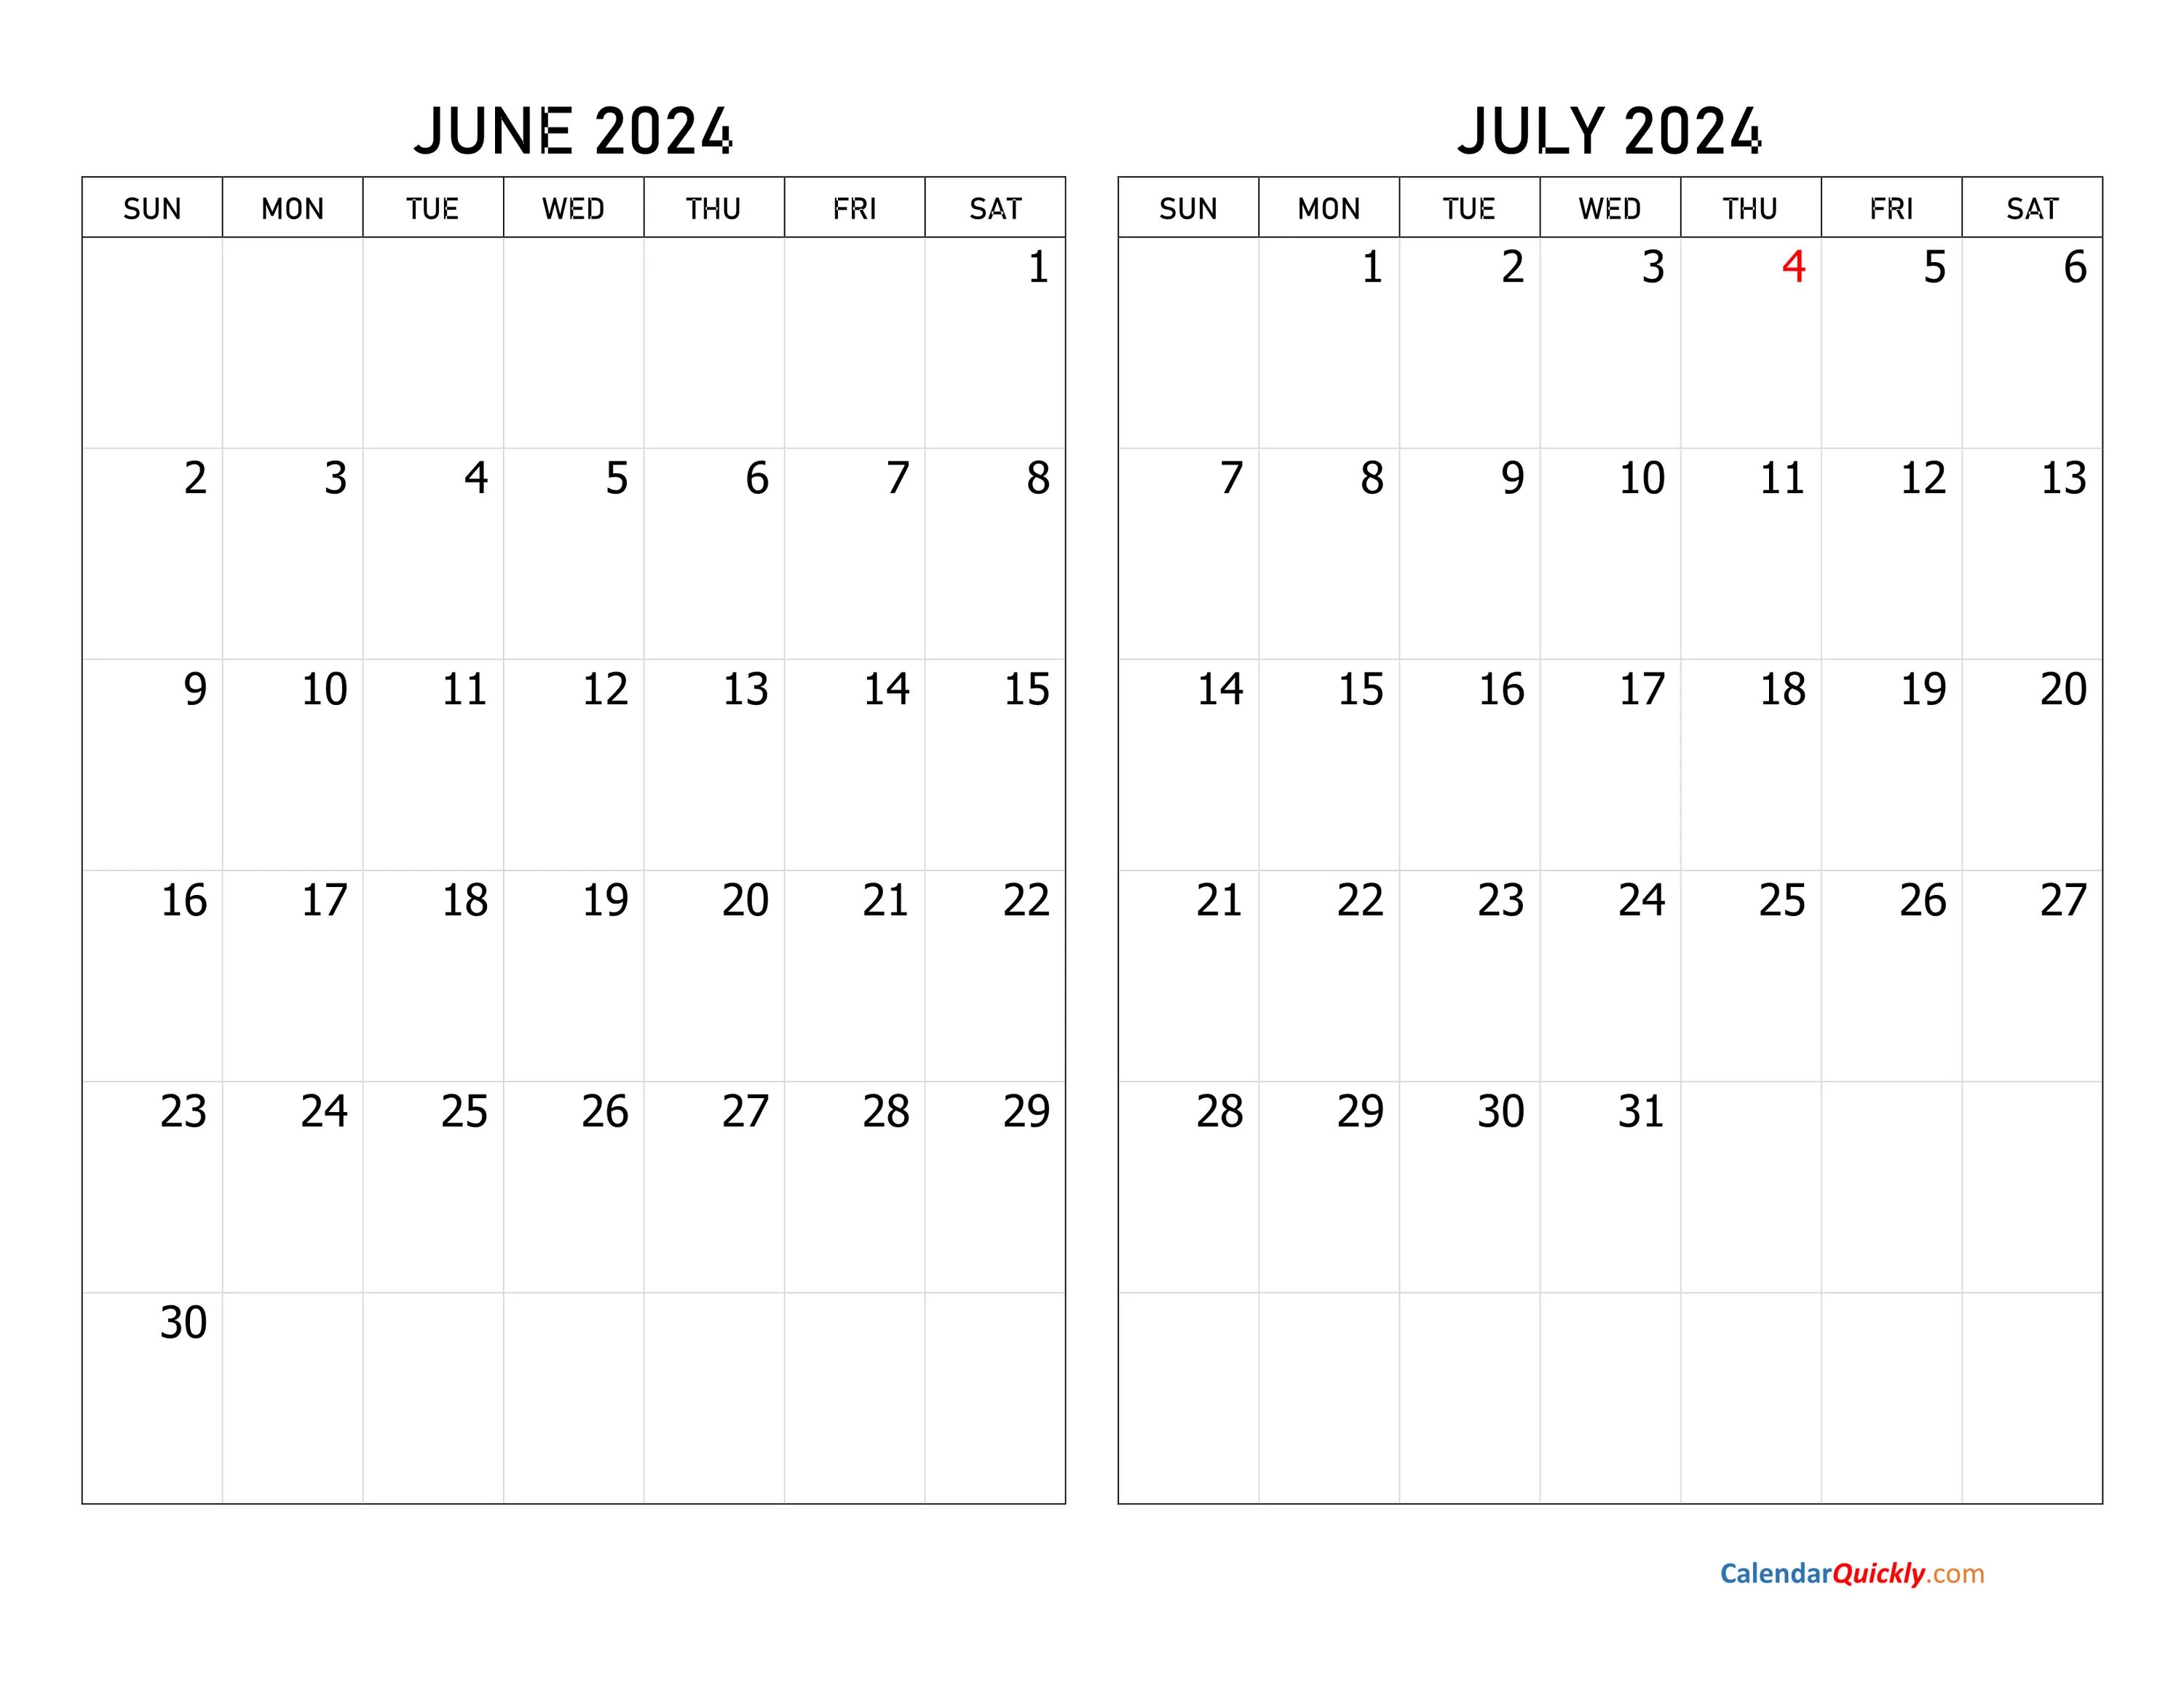 Календарь июль 2022. Декабрь 2022. Календарь октябрь 2022. Календарь май 2022.